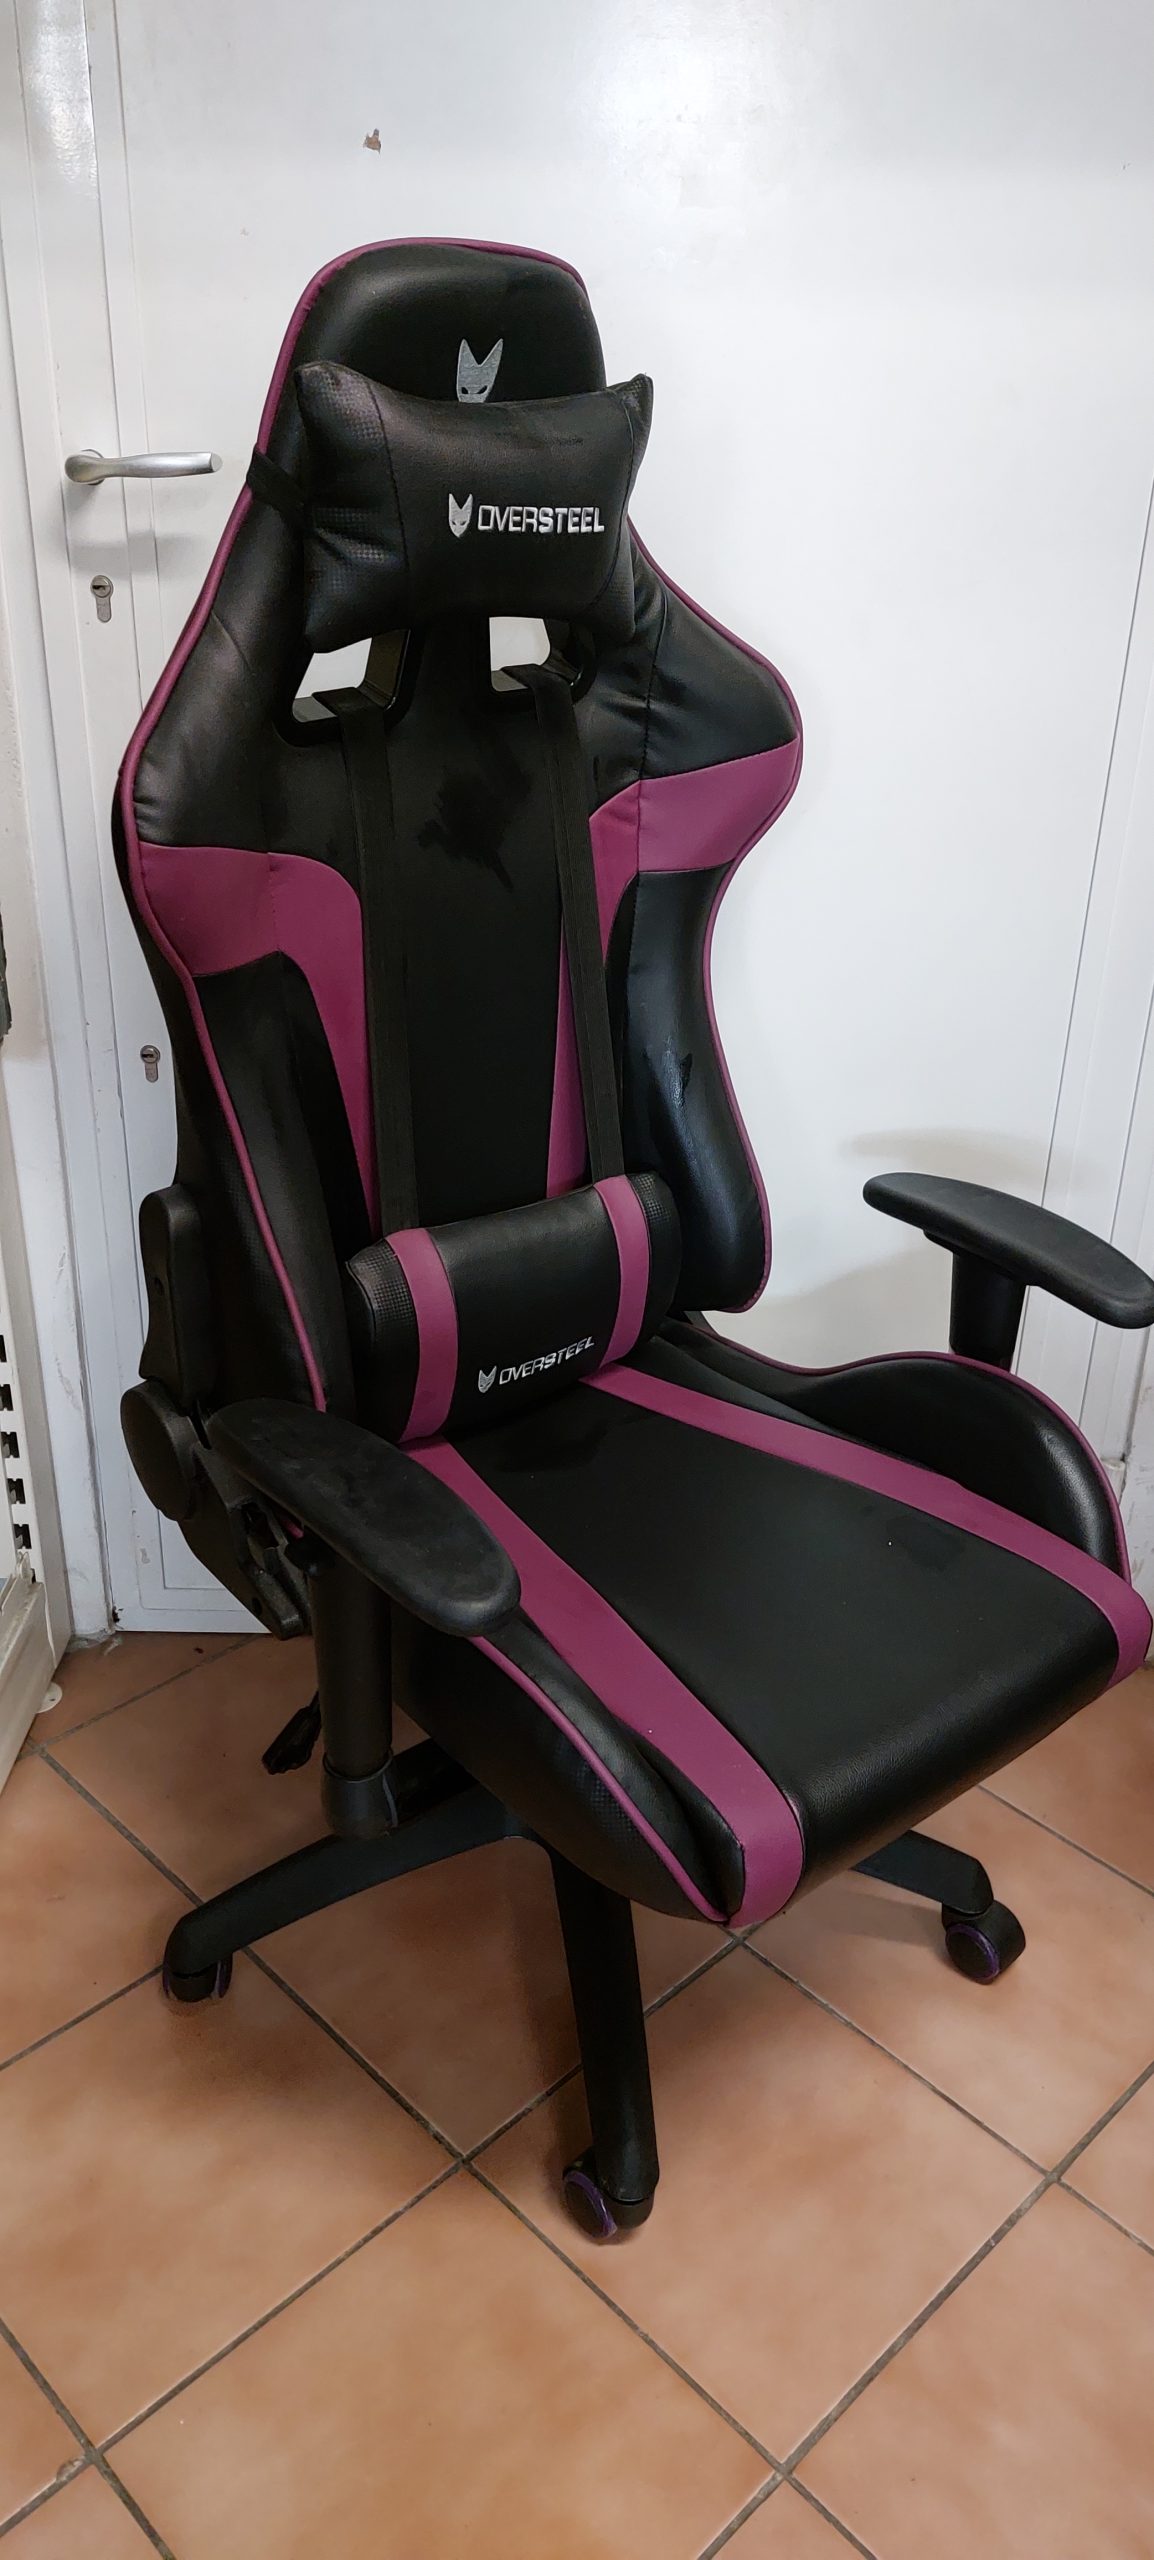 Eladó Oversteel Ultimet Gamer  szék. lila fekete, kiemelt kép